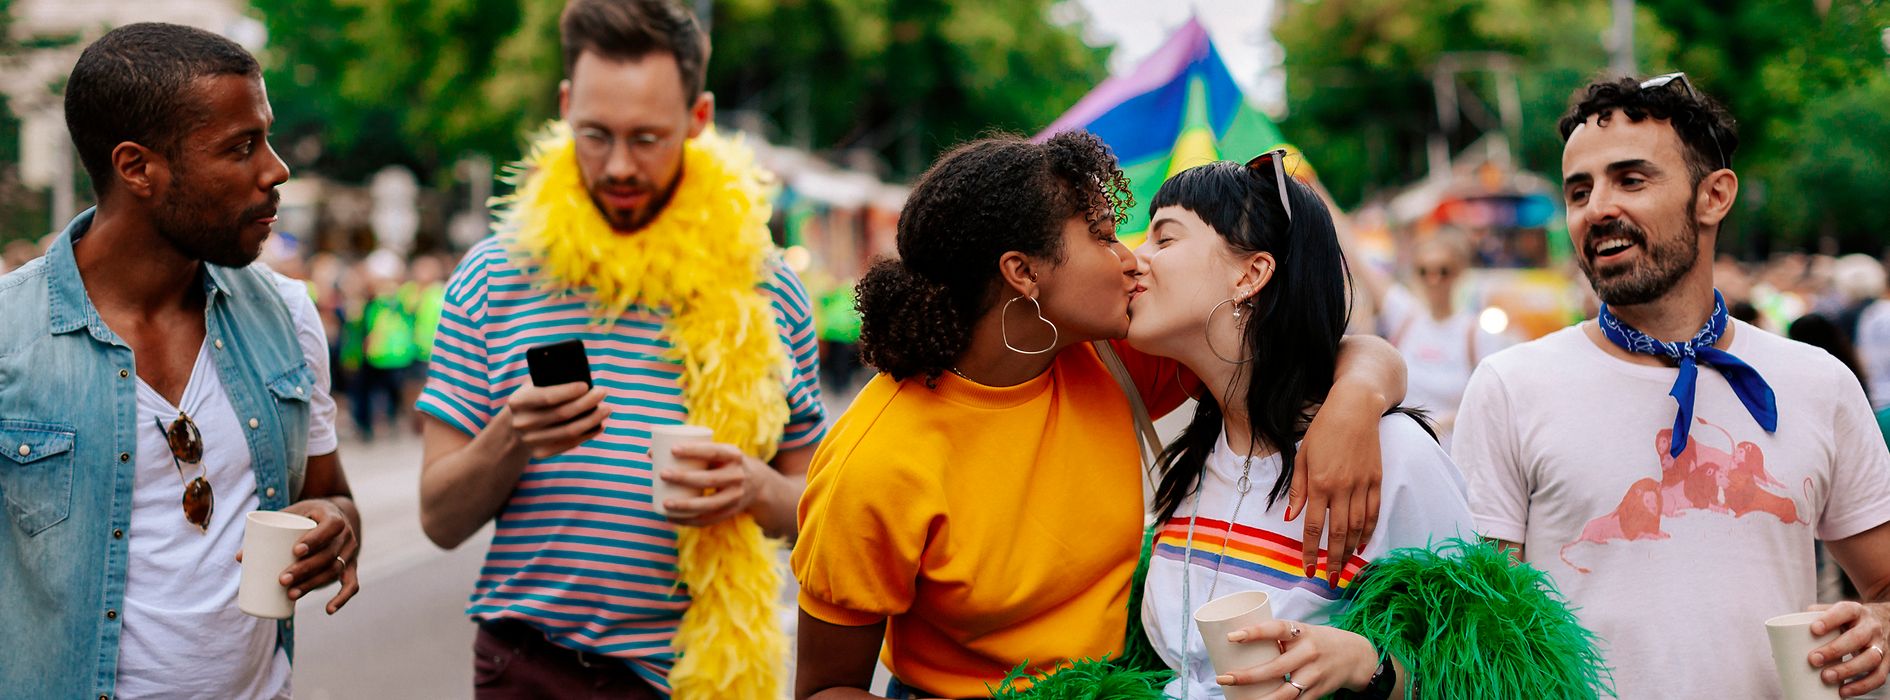 Geje i lesbijki na Tęczowej Paradzie